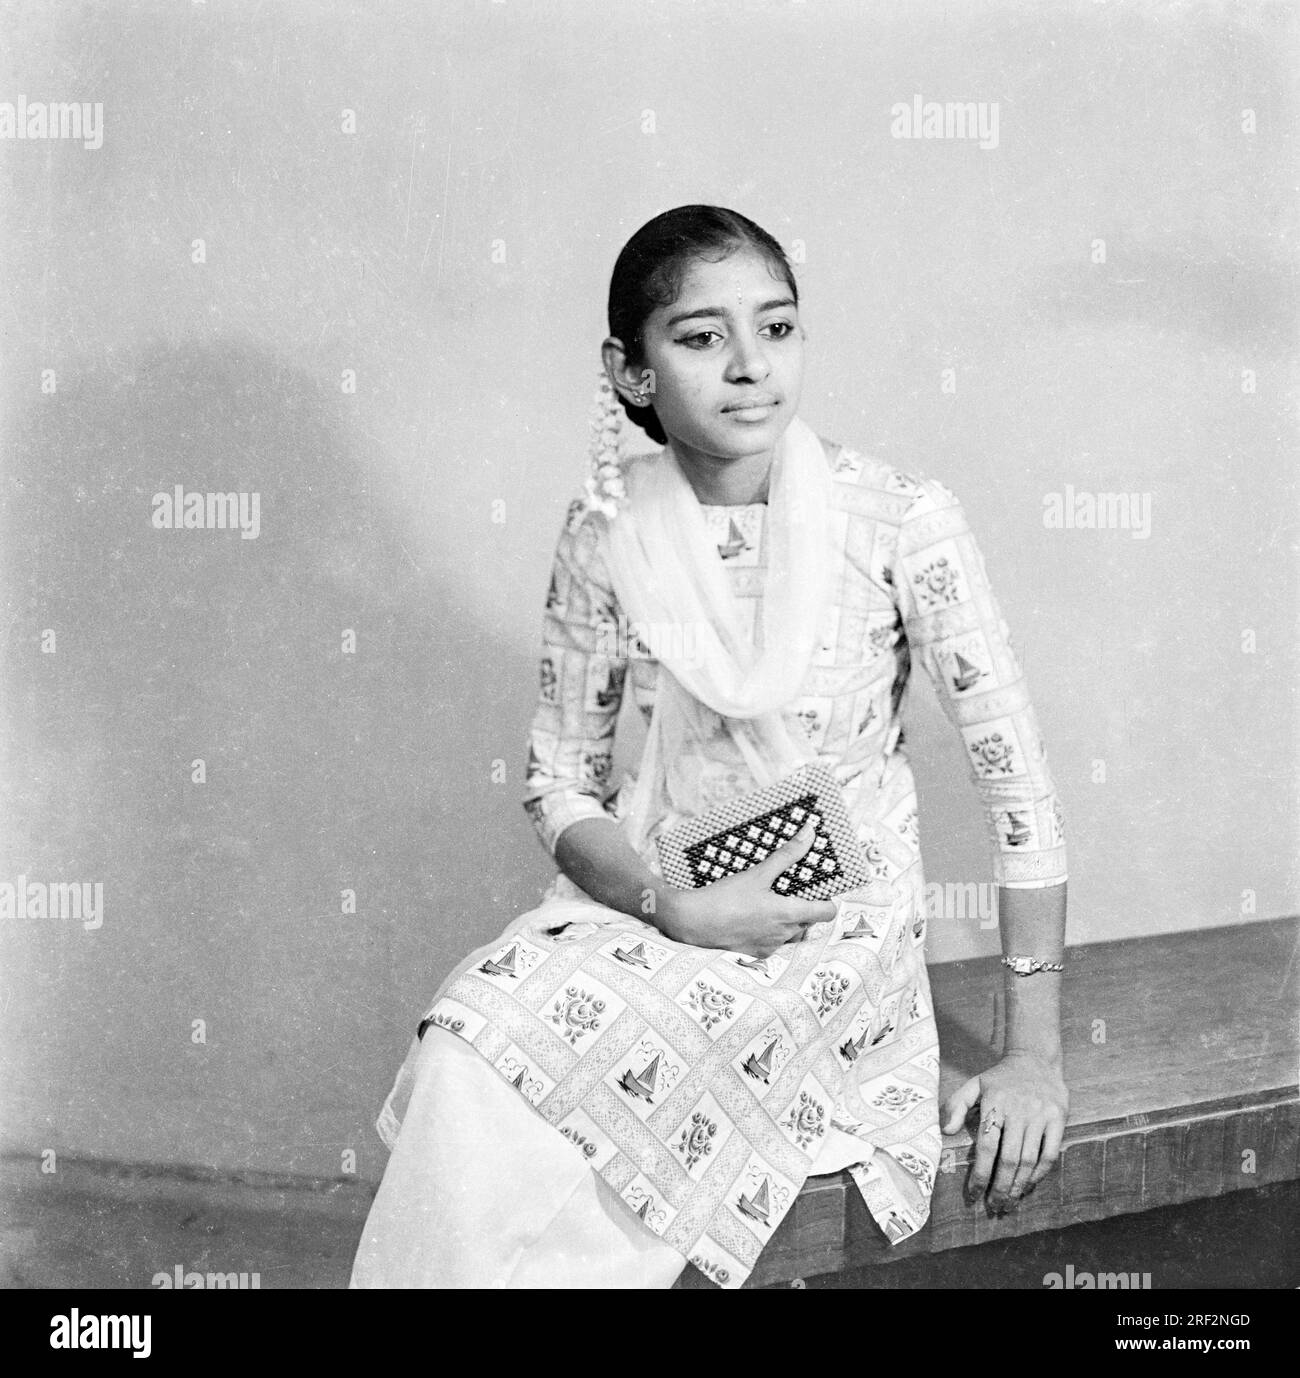 Vieux vintage des années 1900 photo de studio noir et blanc de fille indienne portant salwar kameez main main hair fleur Inde des années 1940 Banque D'Images